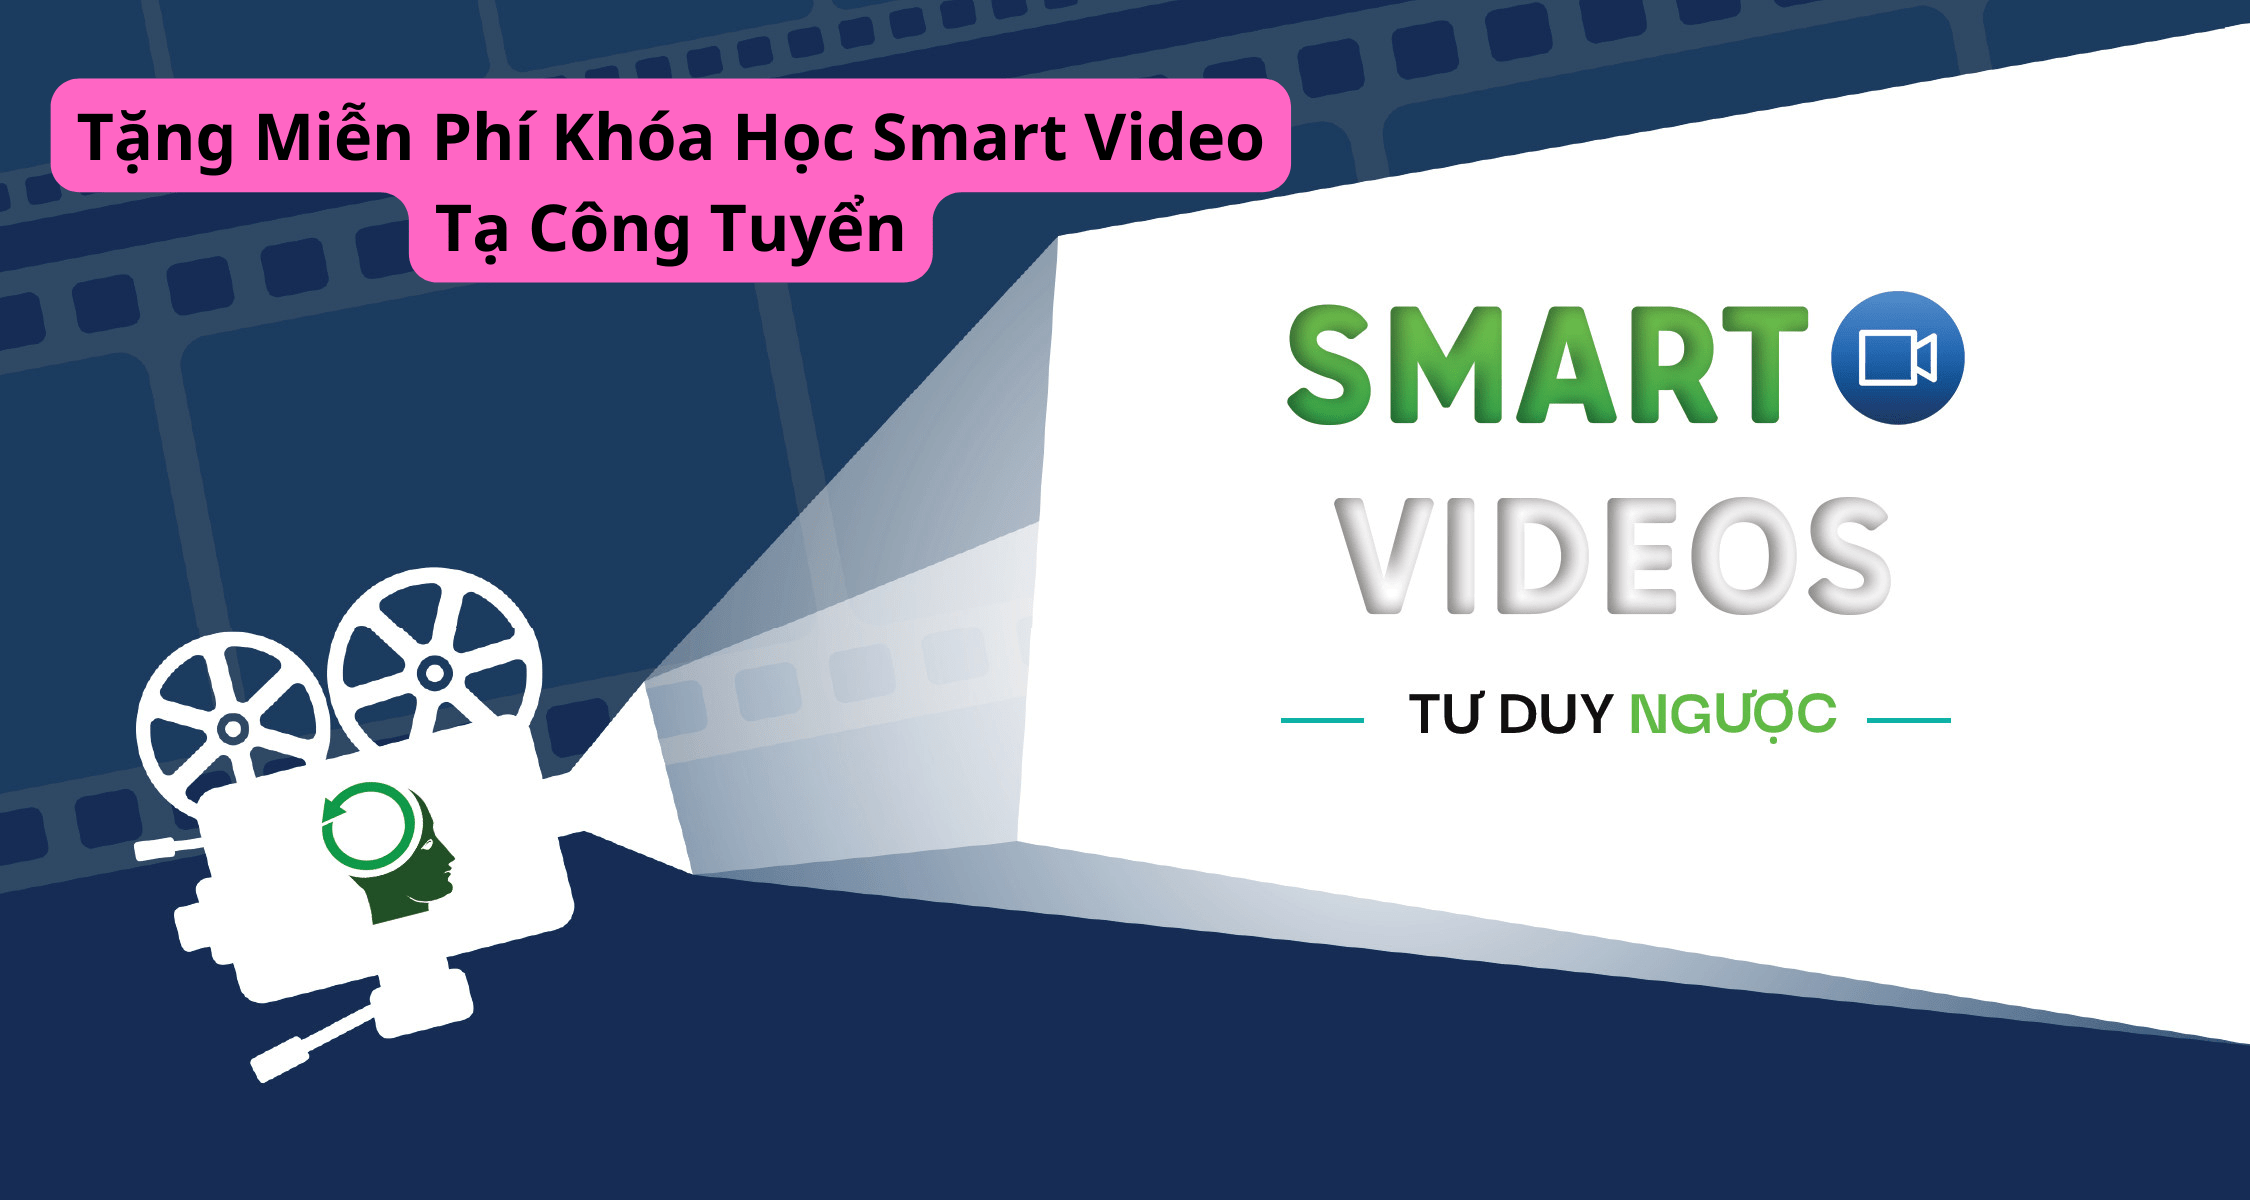 Tặng Miễn Phí Khóa Học Smart Video Tạ Công Tuyển